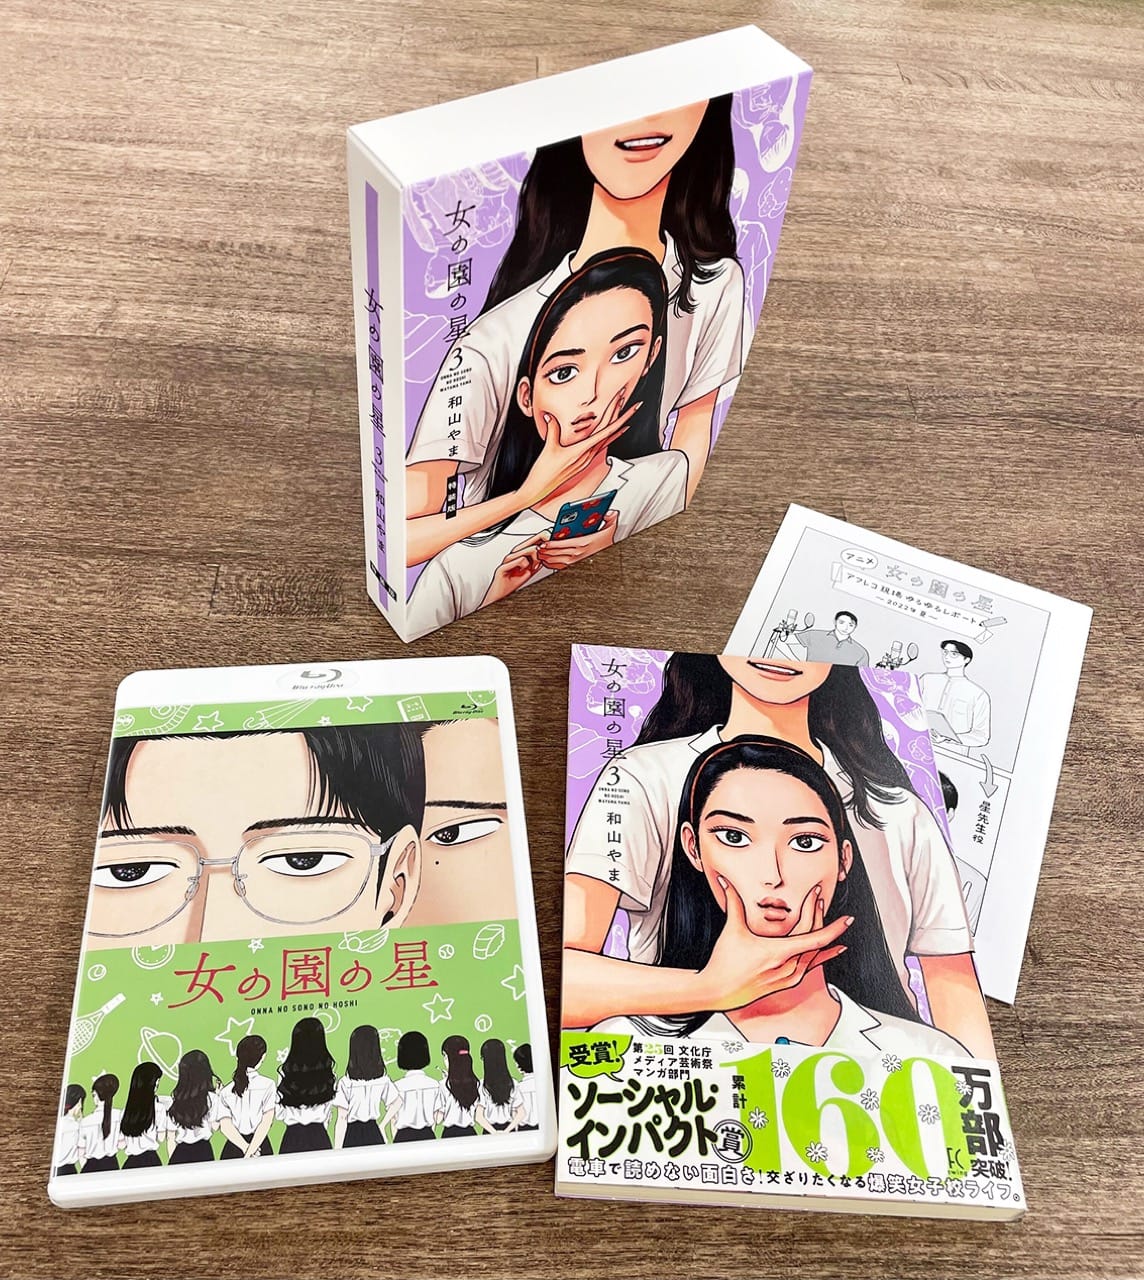 和山やま「女の園の星」最新刊 第3巻 12月8日発売! 特装版も!